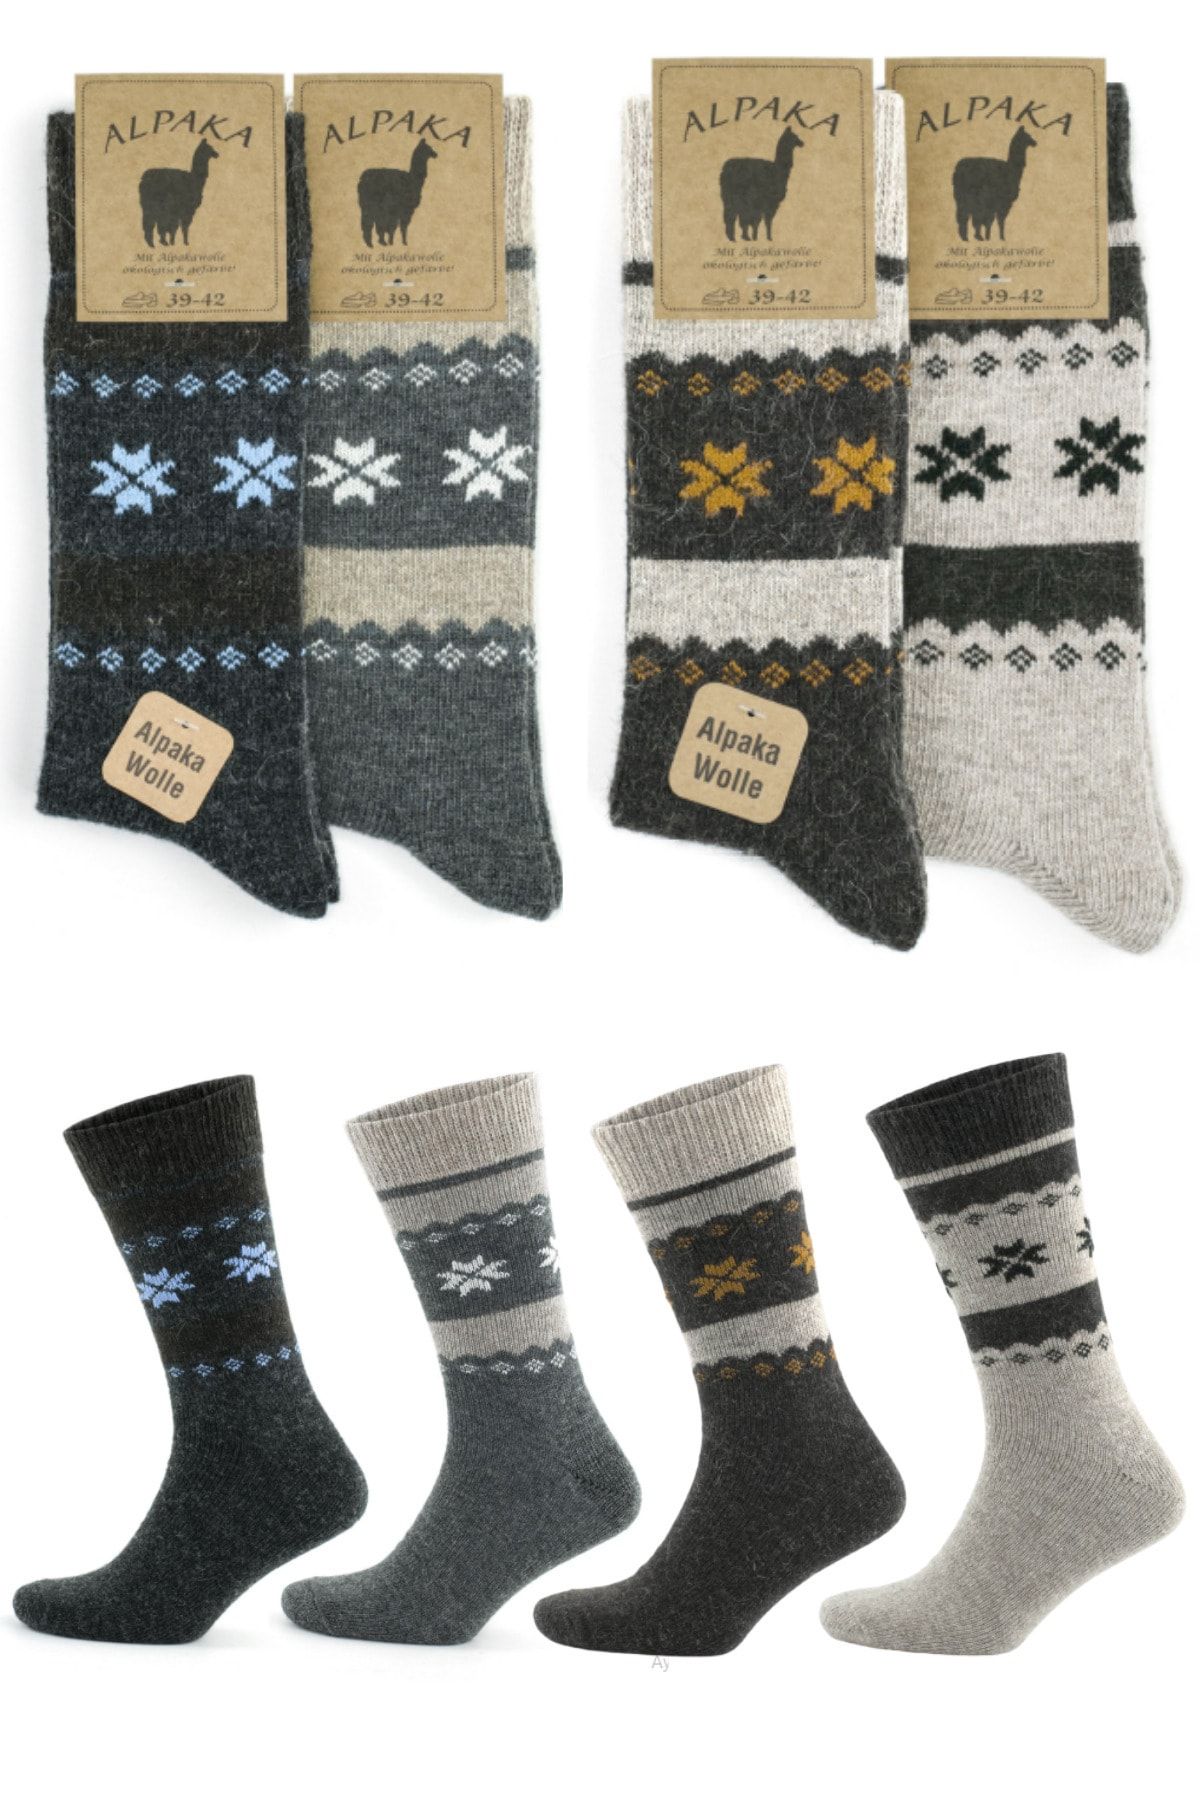 socksbox Kışlık Alpaka Doğal Yün Kar Desenli Termal Çorap